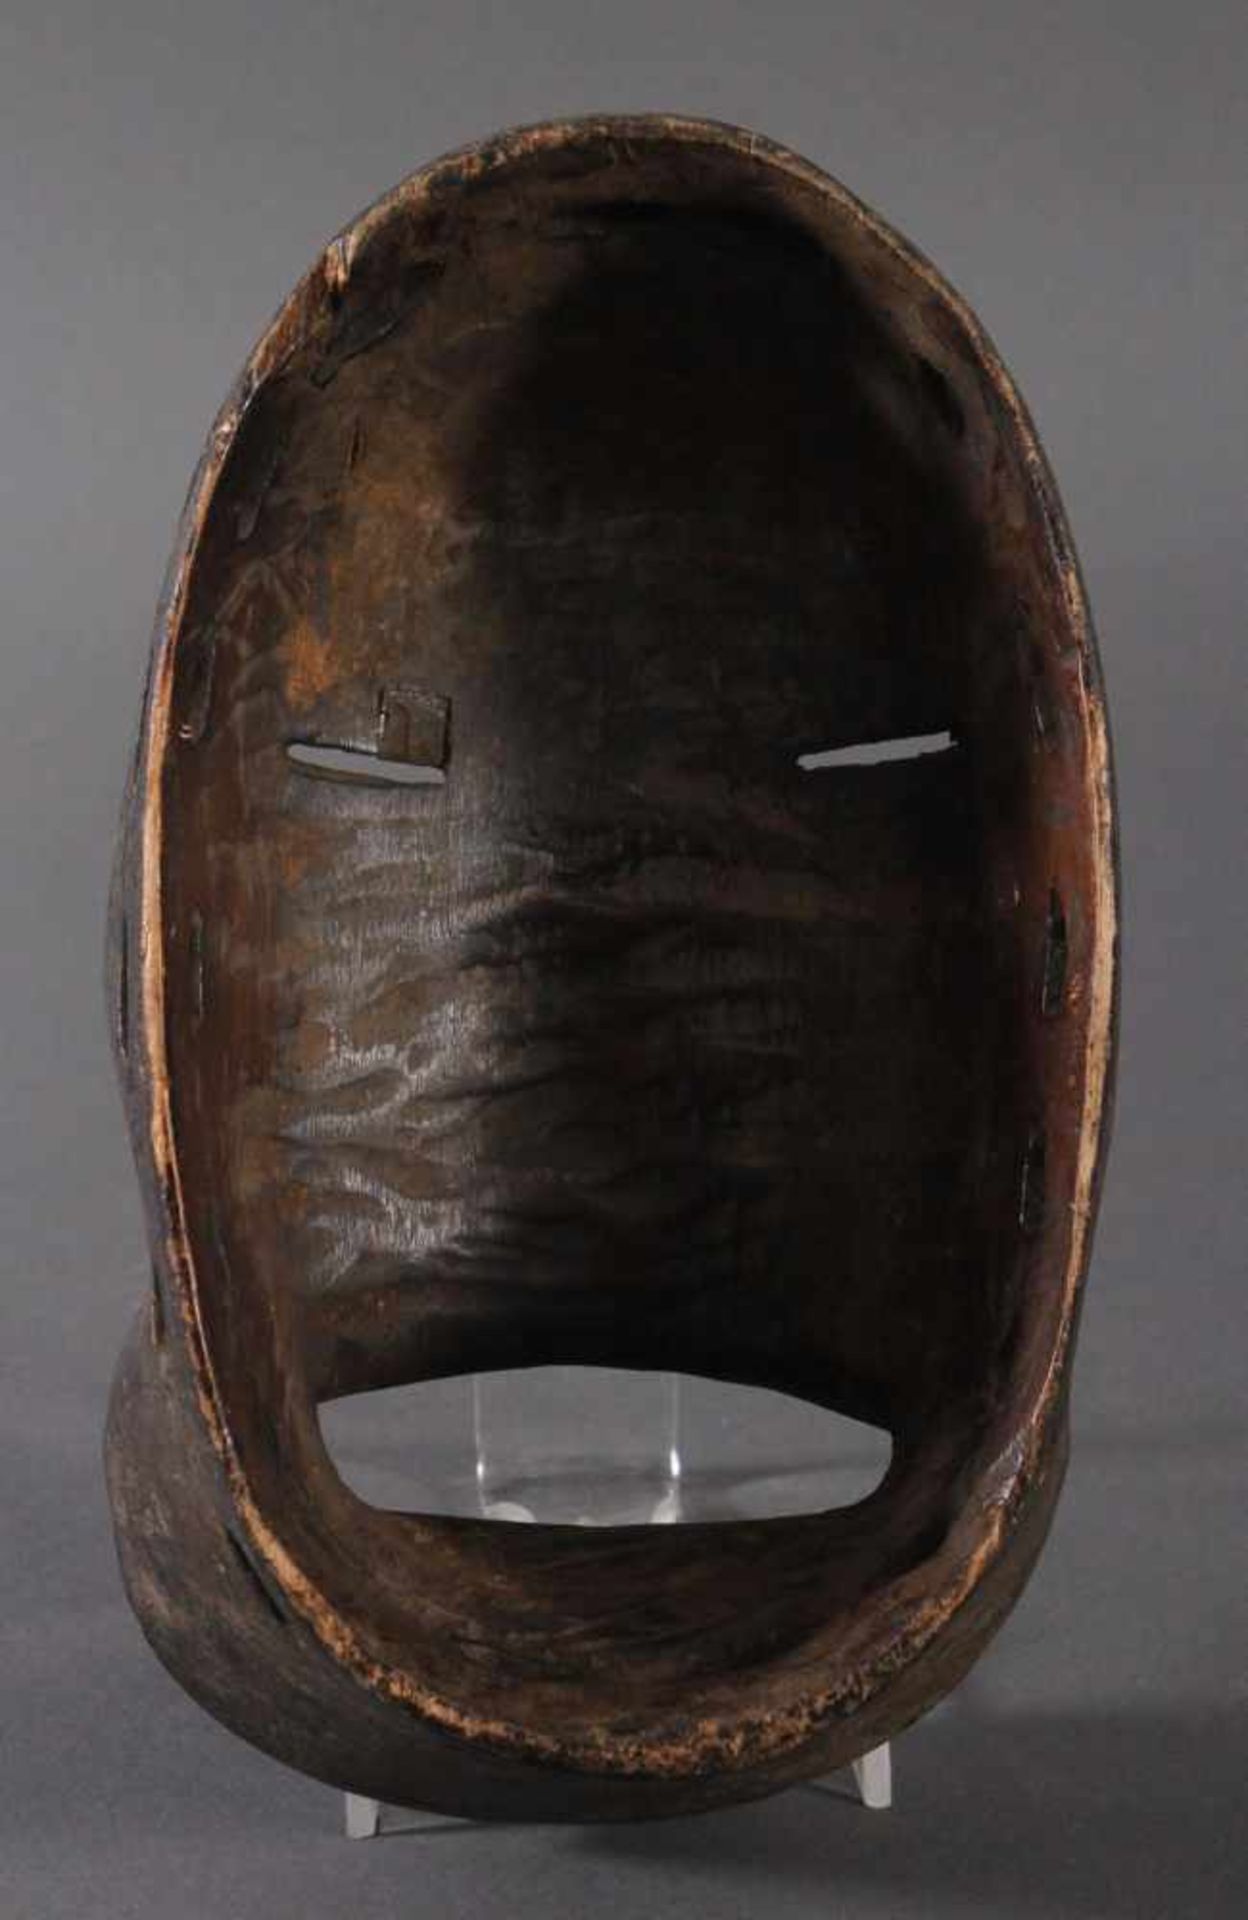 Antike Maske, Dan-Kran, ElfenbeinküsteHolz, geschnitzt, dunkel patiniert, weiße Farbfassung. Nach - Bild 4 aus 4